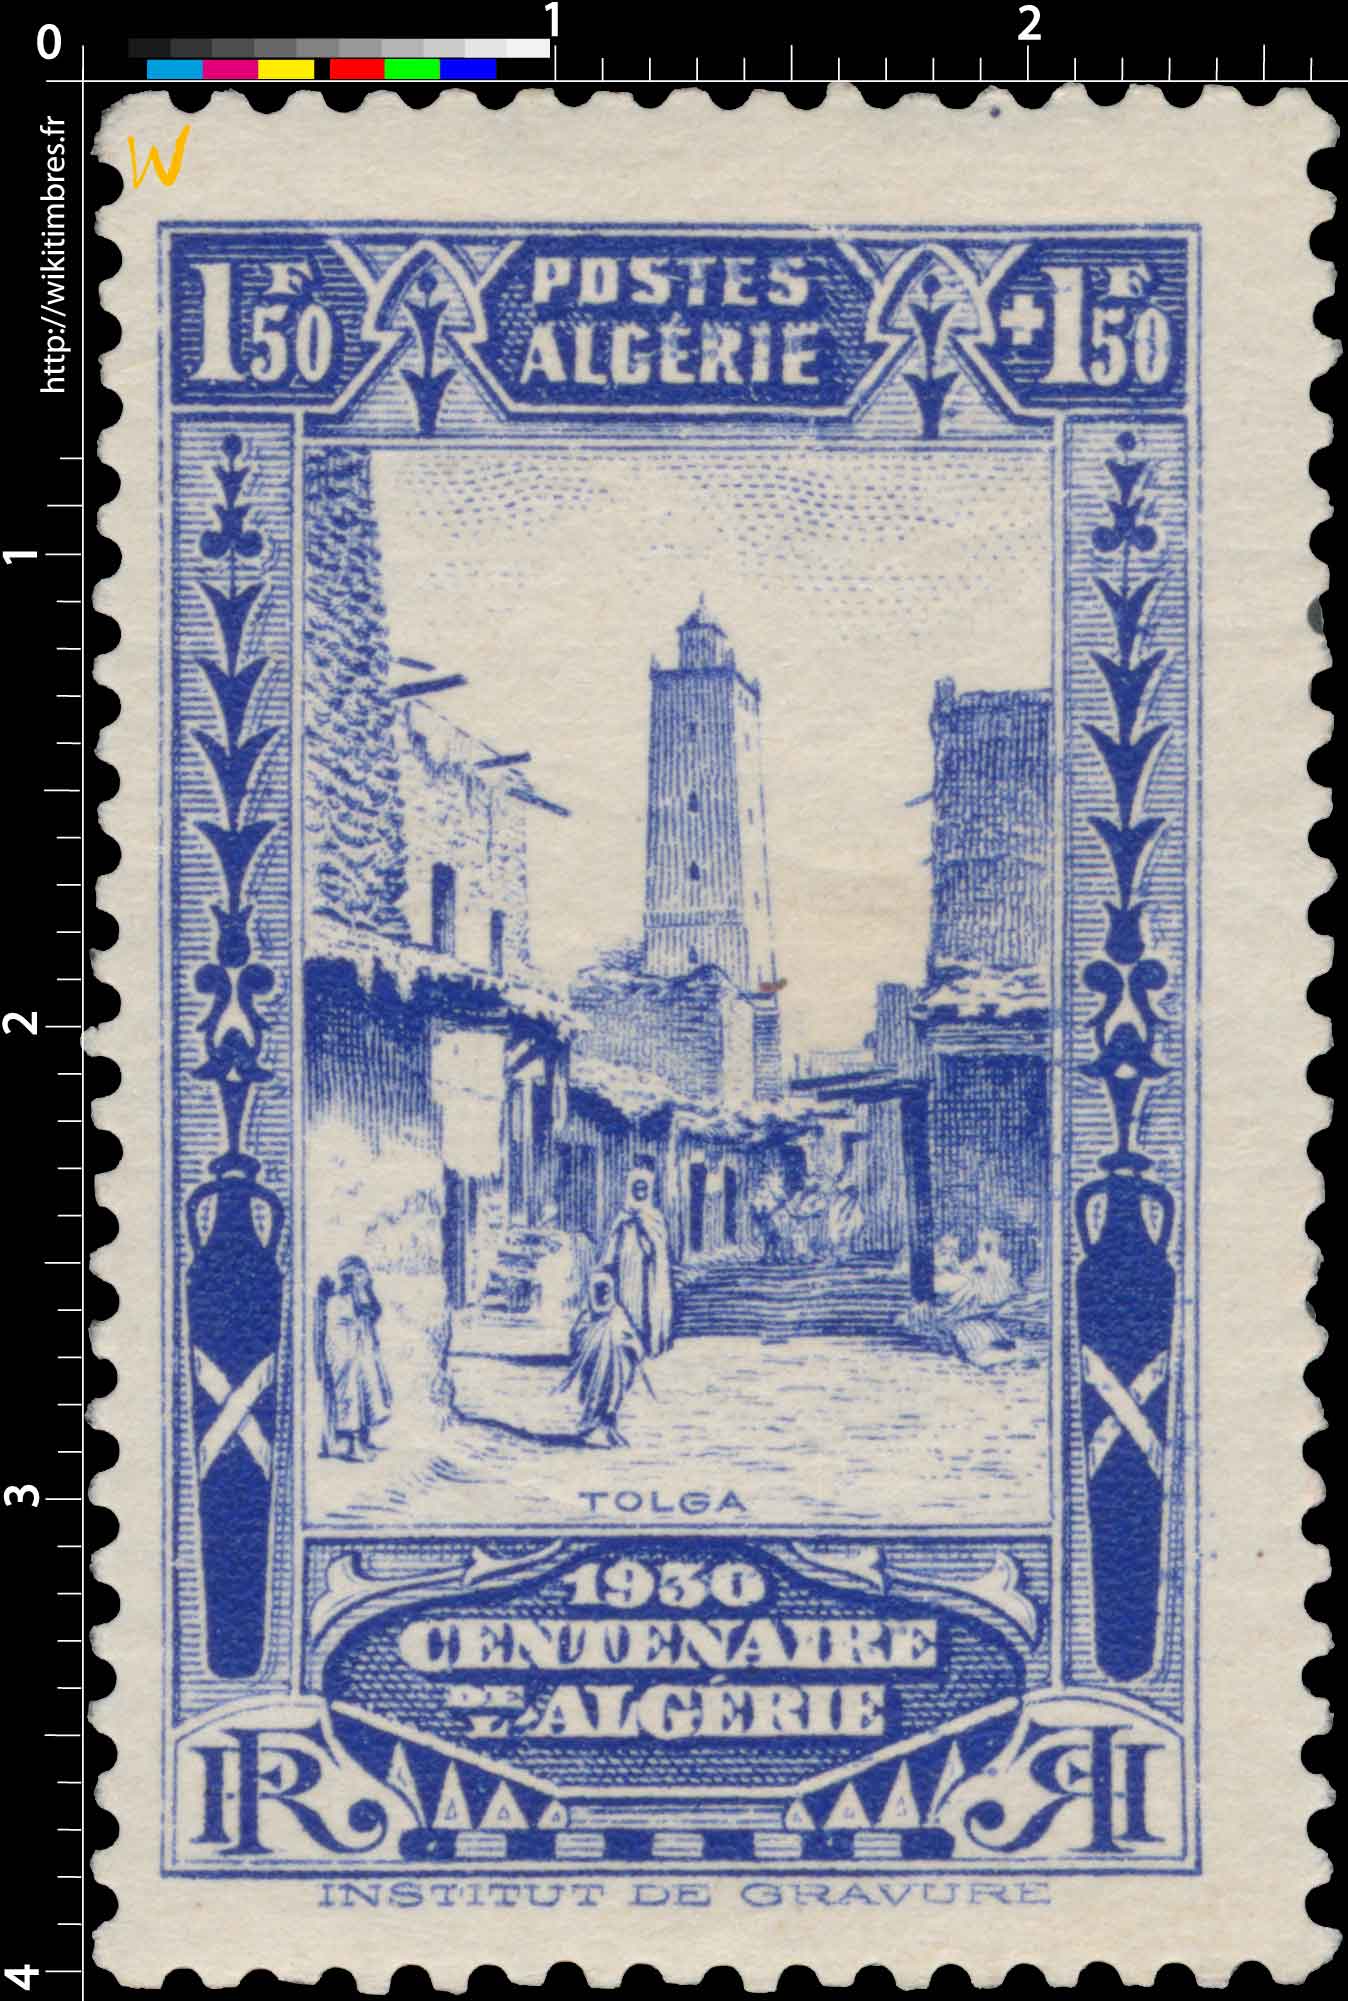 Algérie - Tolga - Centenaire de l'Algérie 1930